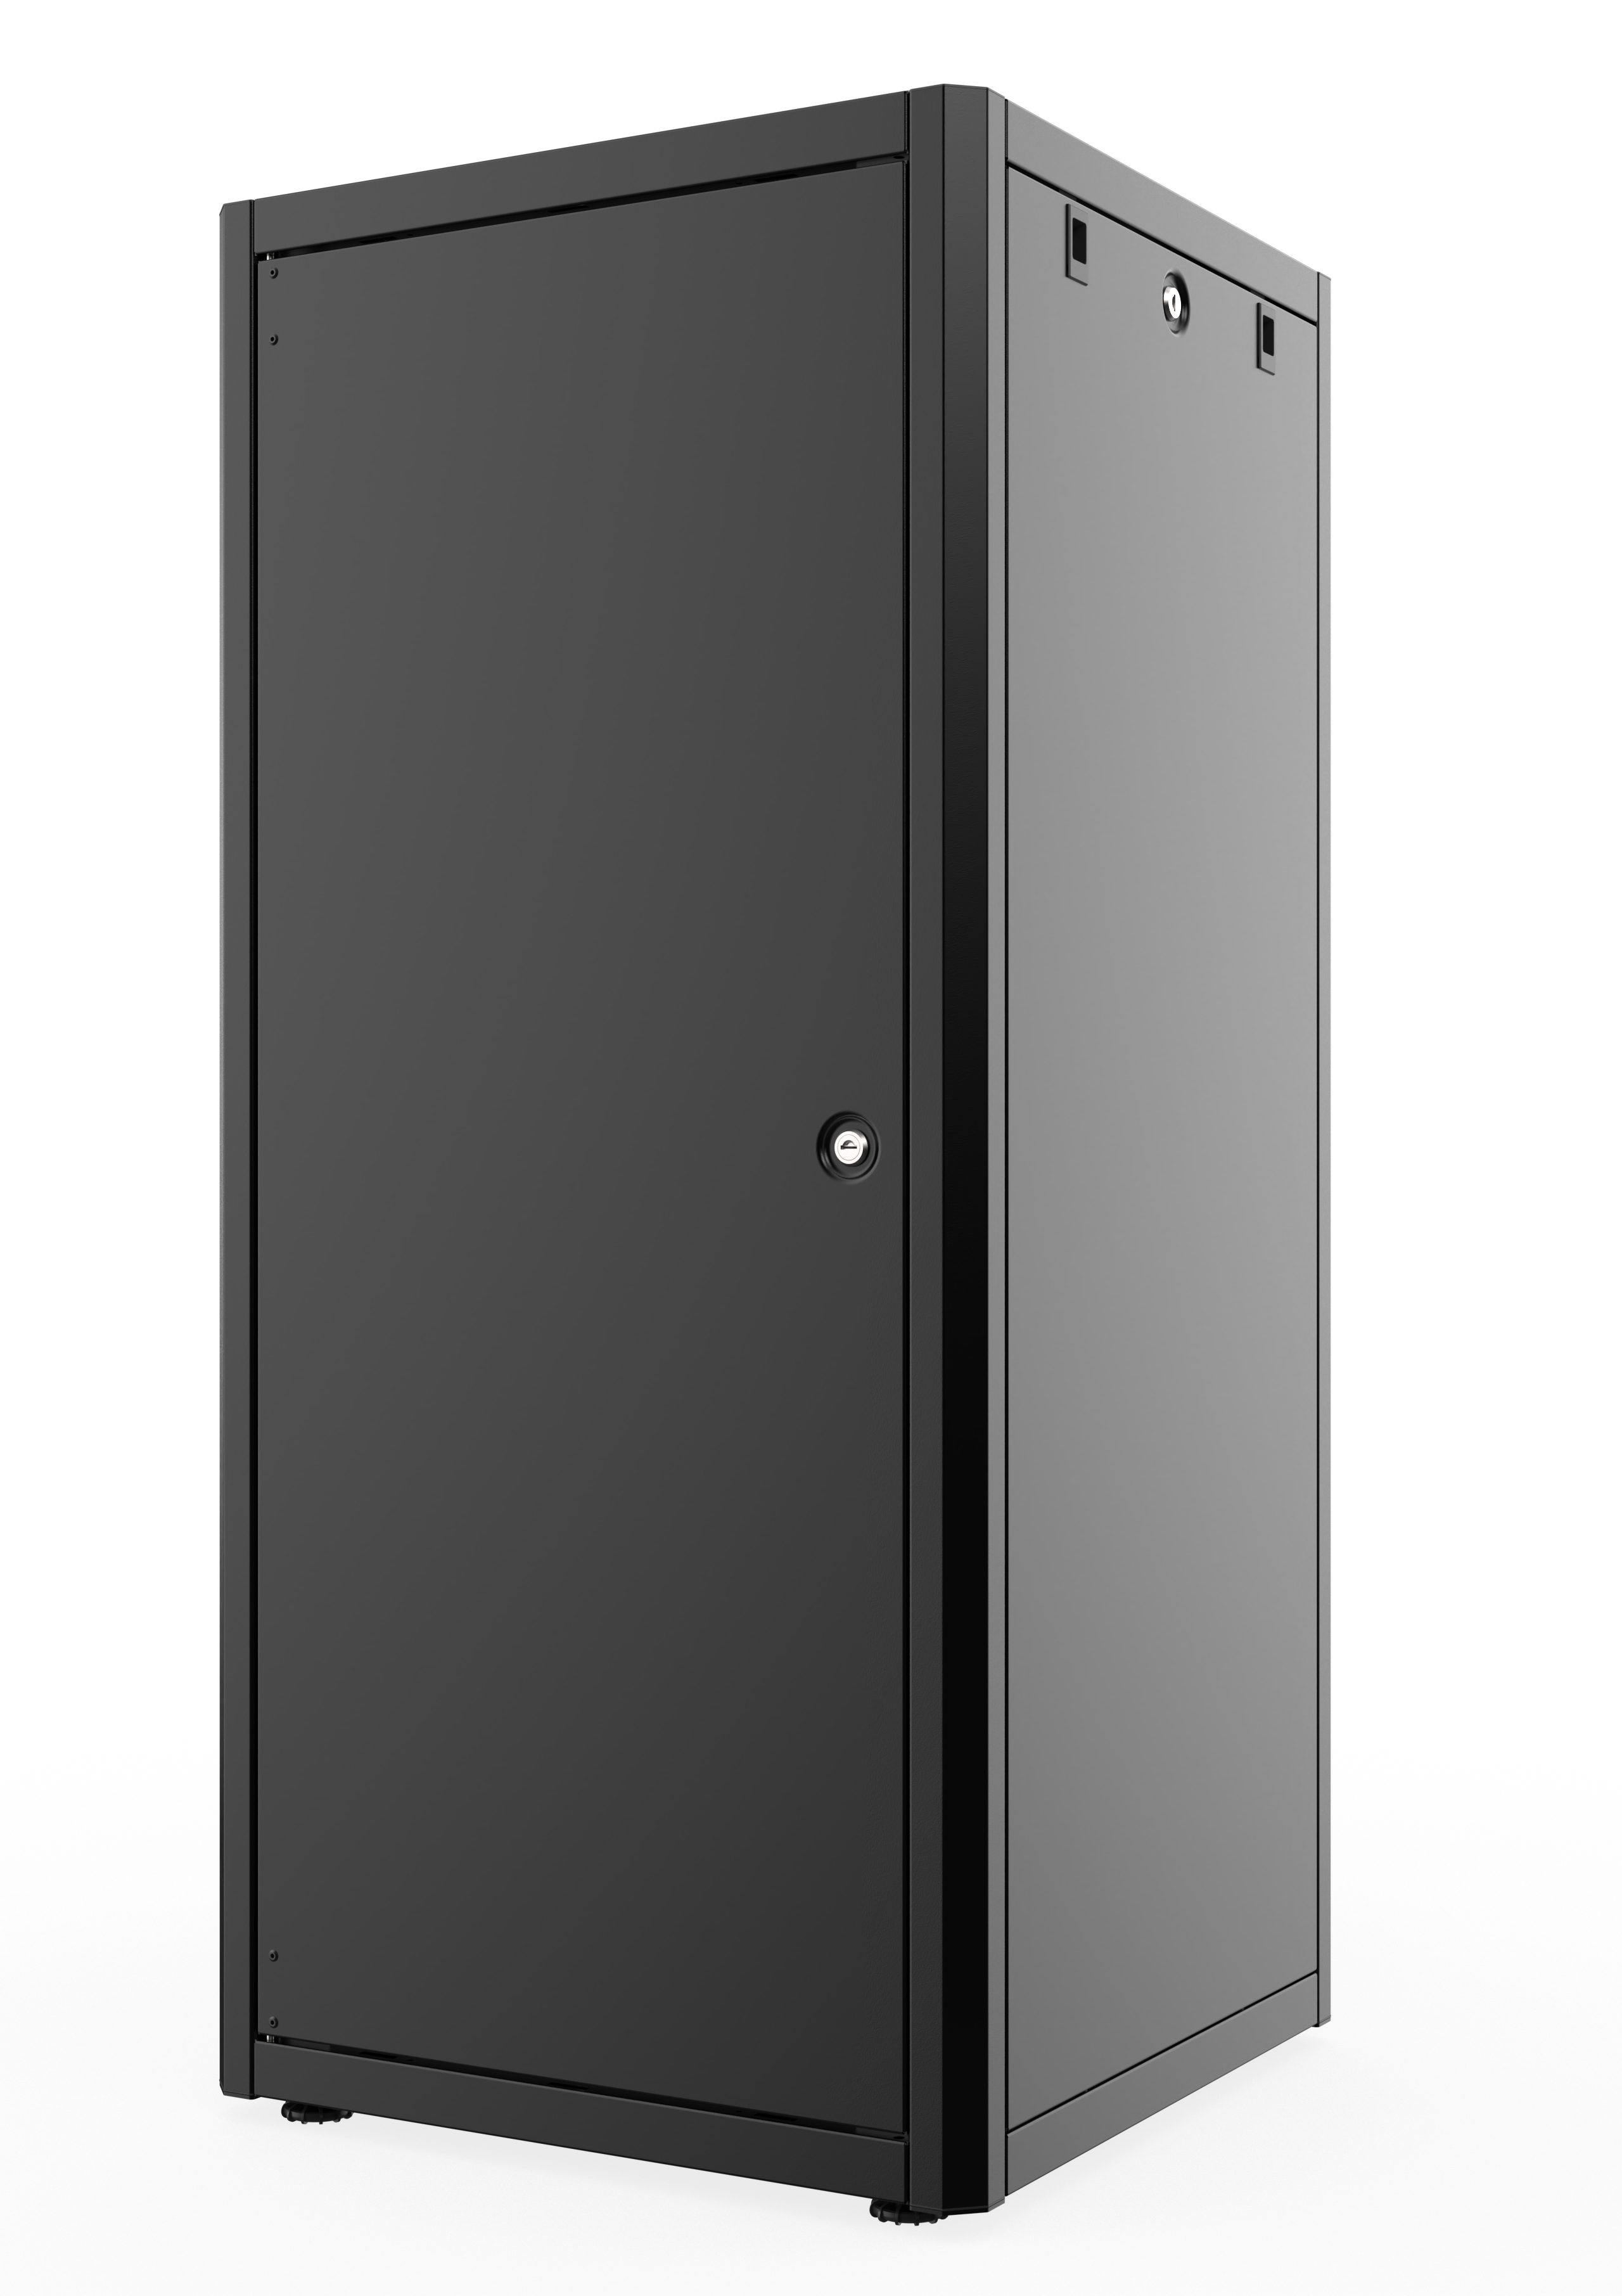 26U, Mirsan GTN Series Cabinet, Width 600mm, Depth 600mm, Ready Assembled, Black